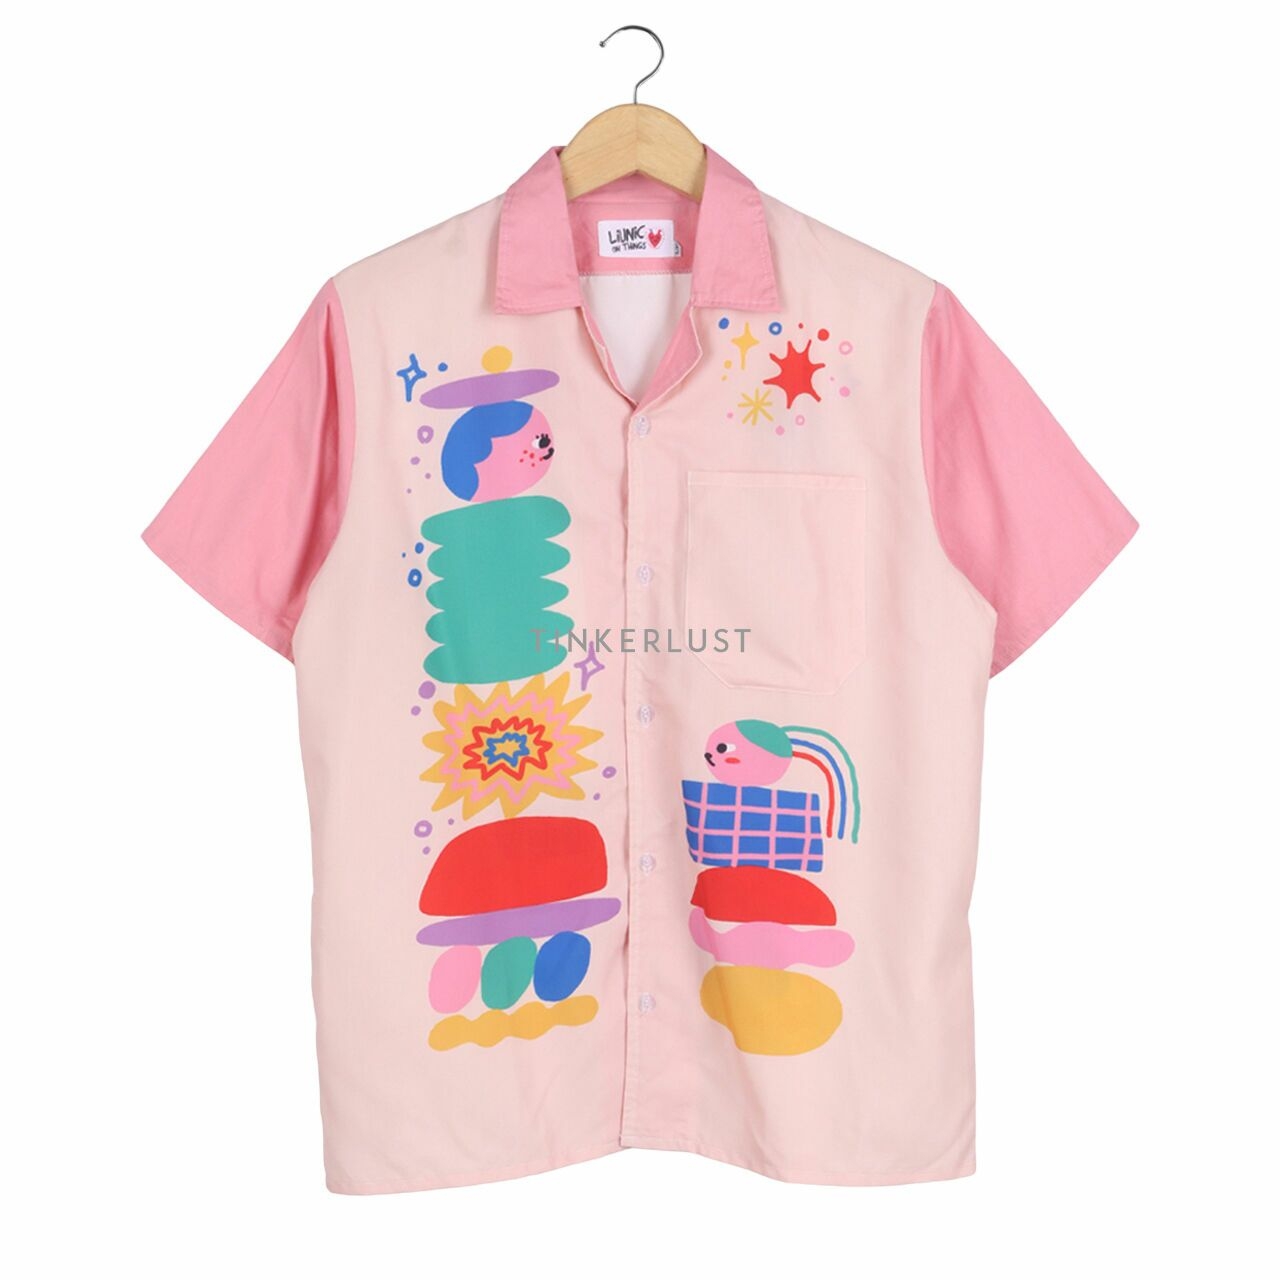 Liunic OnThings Pink & Cream Printed Shirt